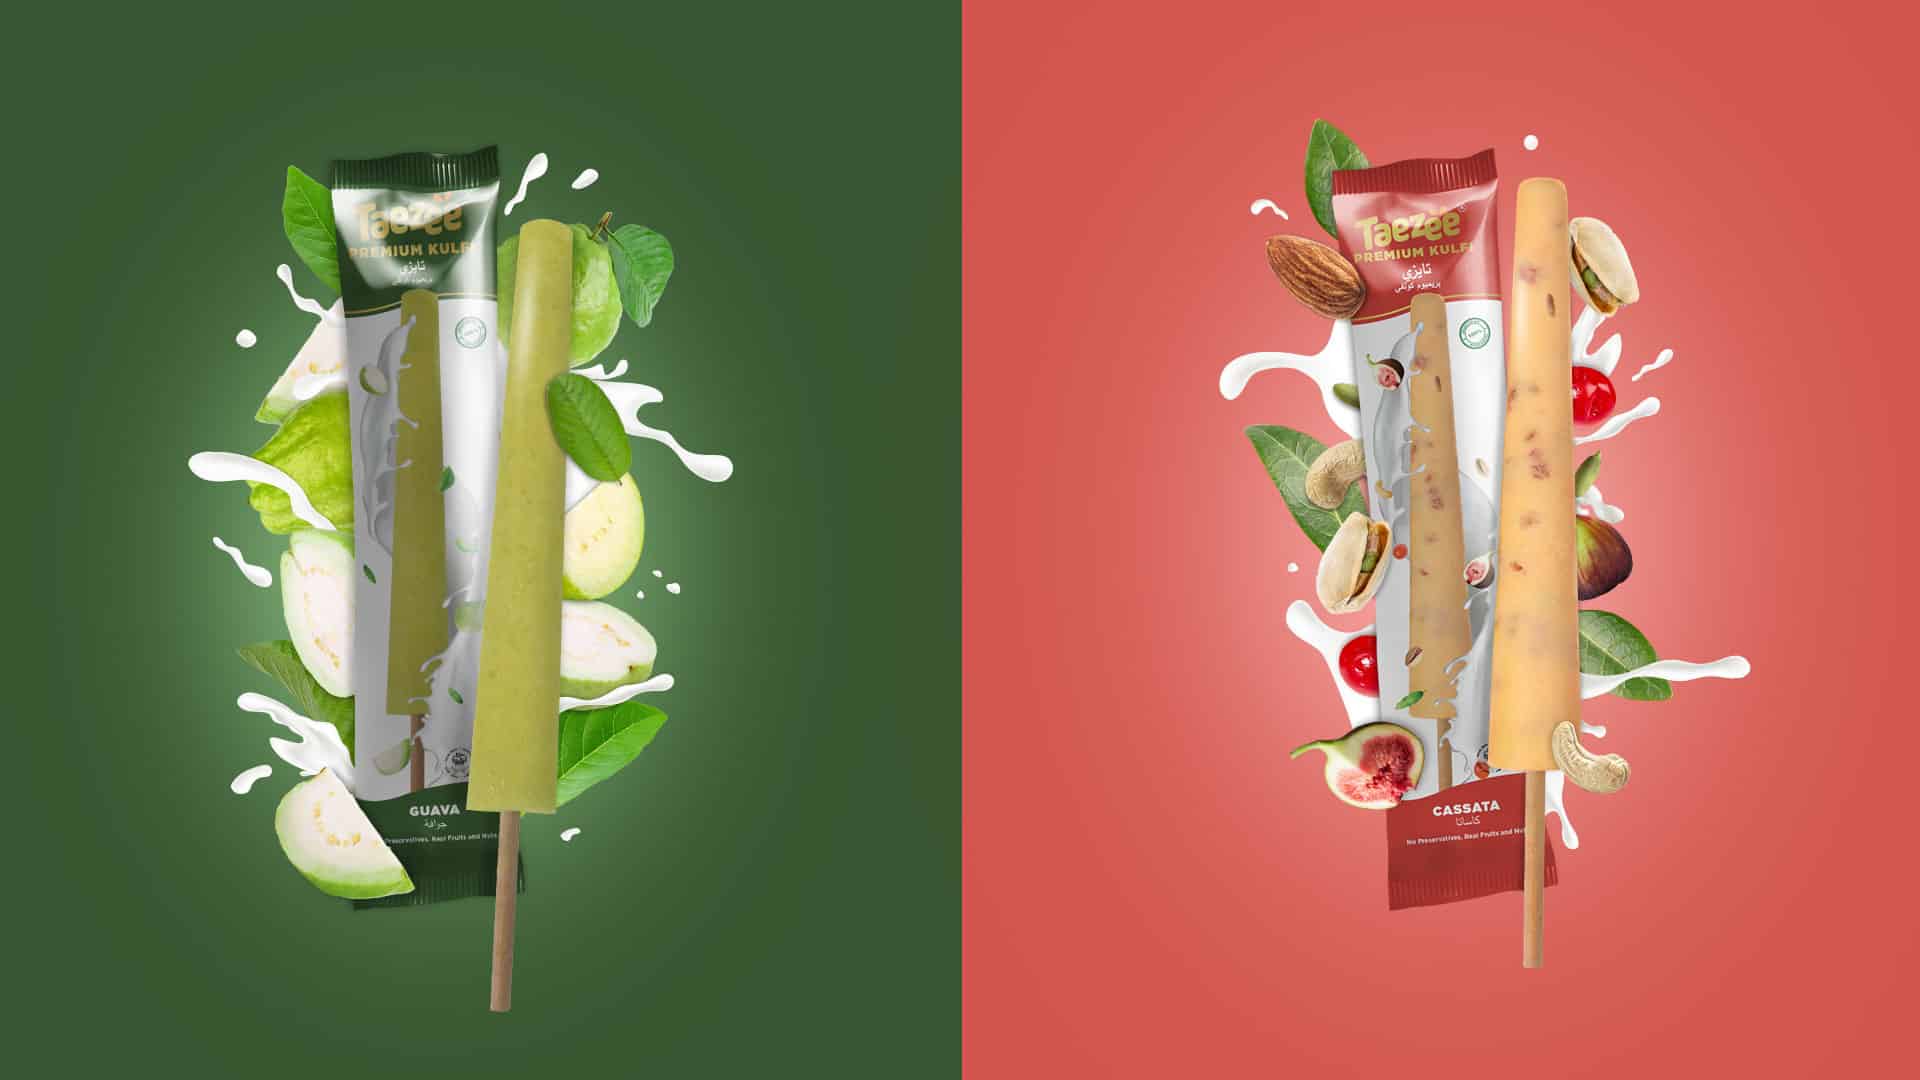 food packaging design companies